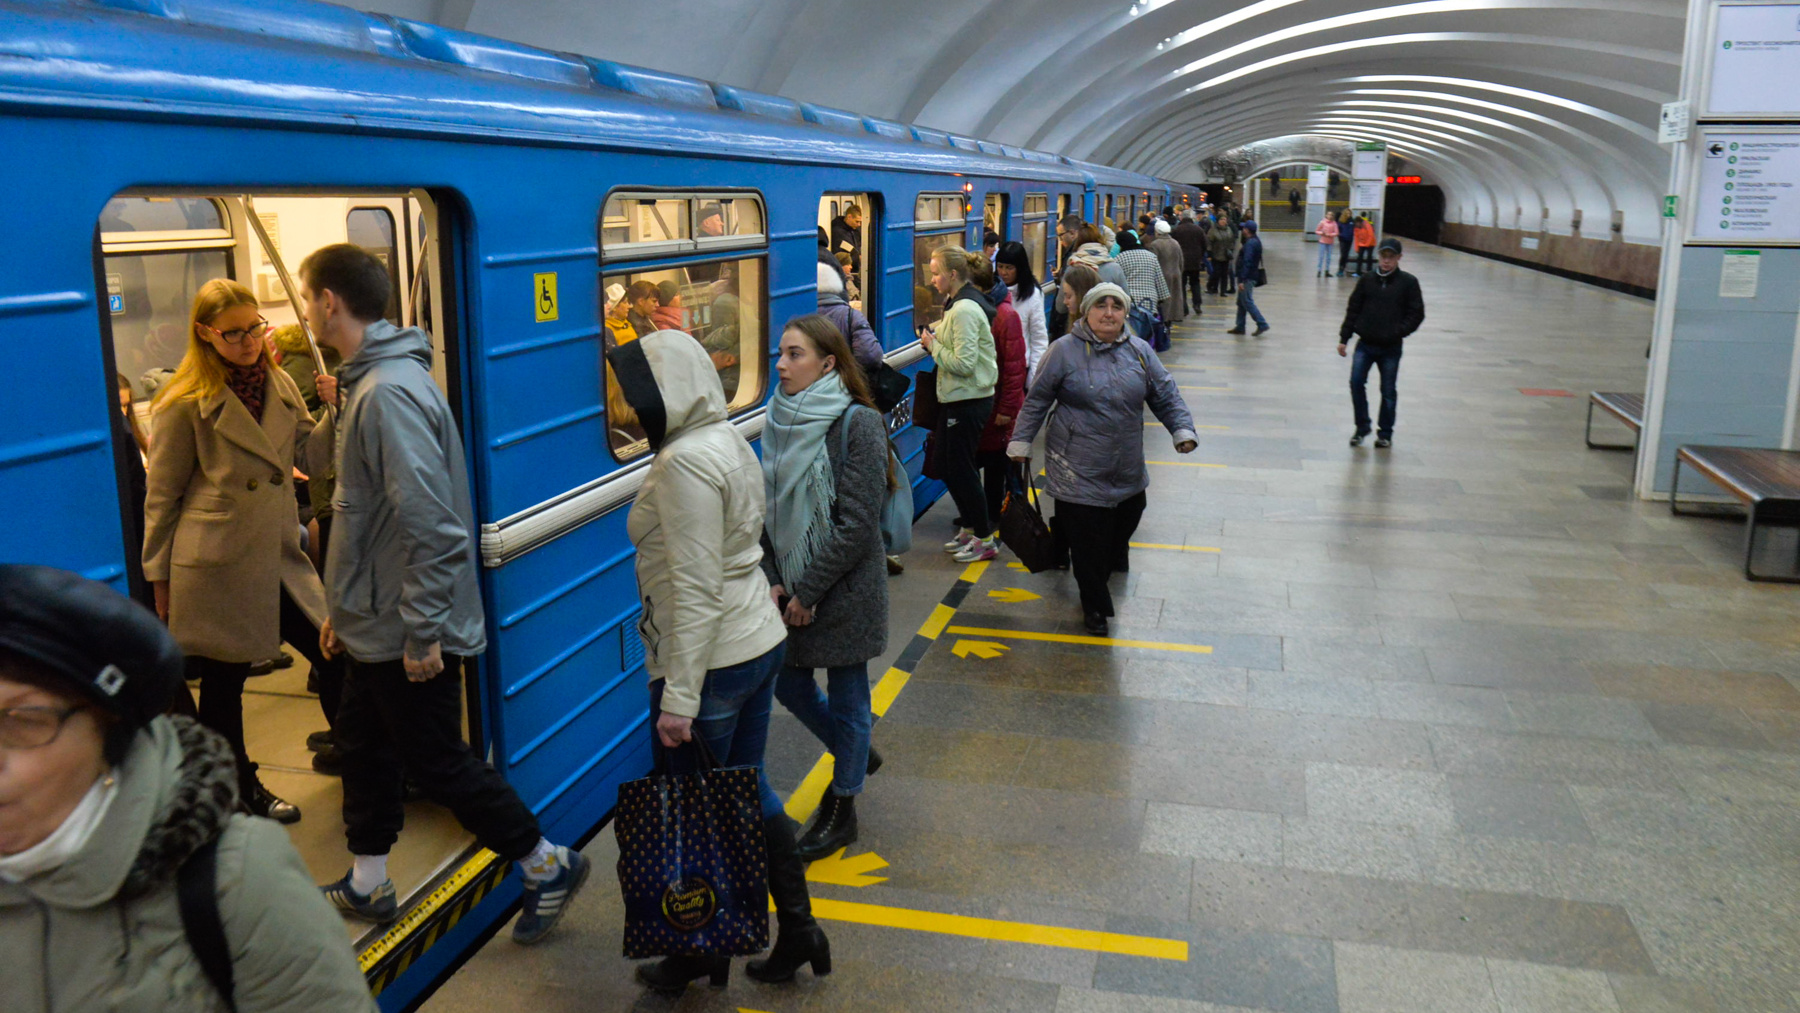 Второй ветки будет мало: в Екатеринбурге запланировали построить третью линию метрополитена